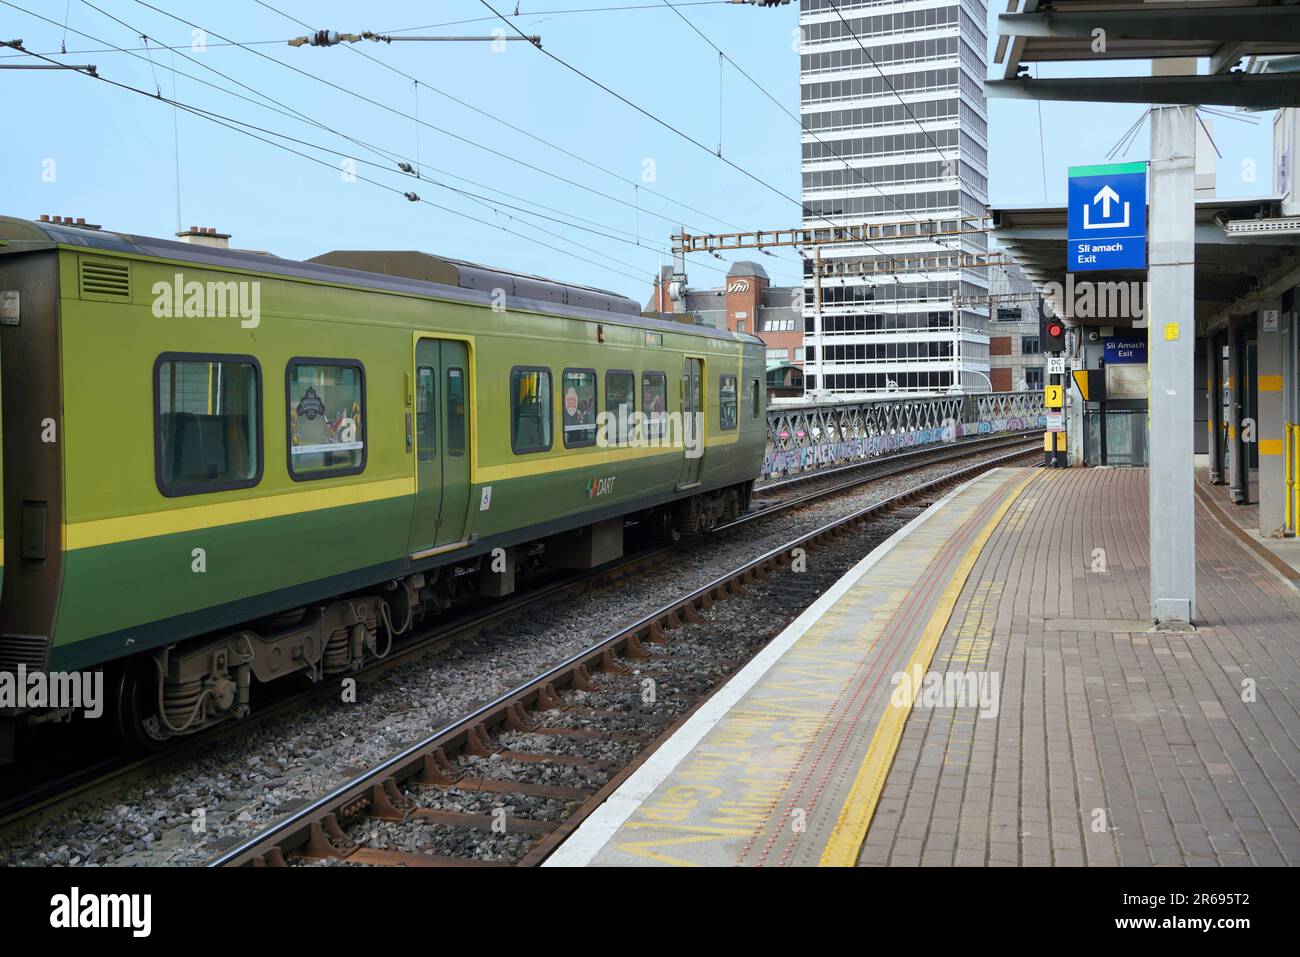 DART commuter train in Dublin Stock Photo